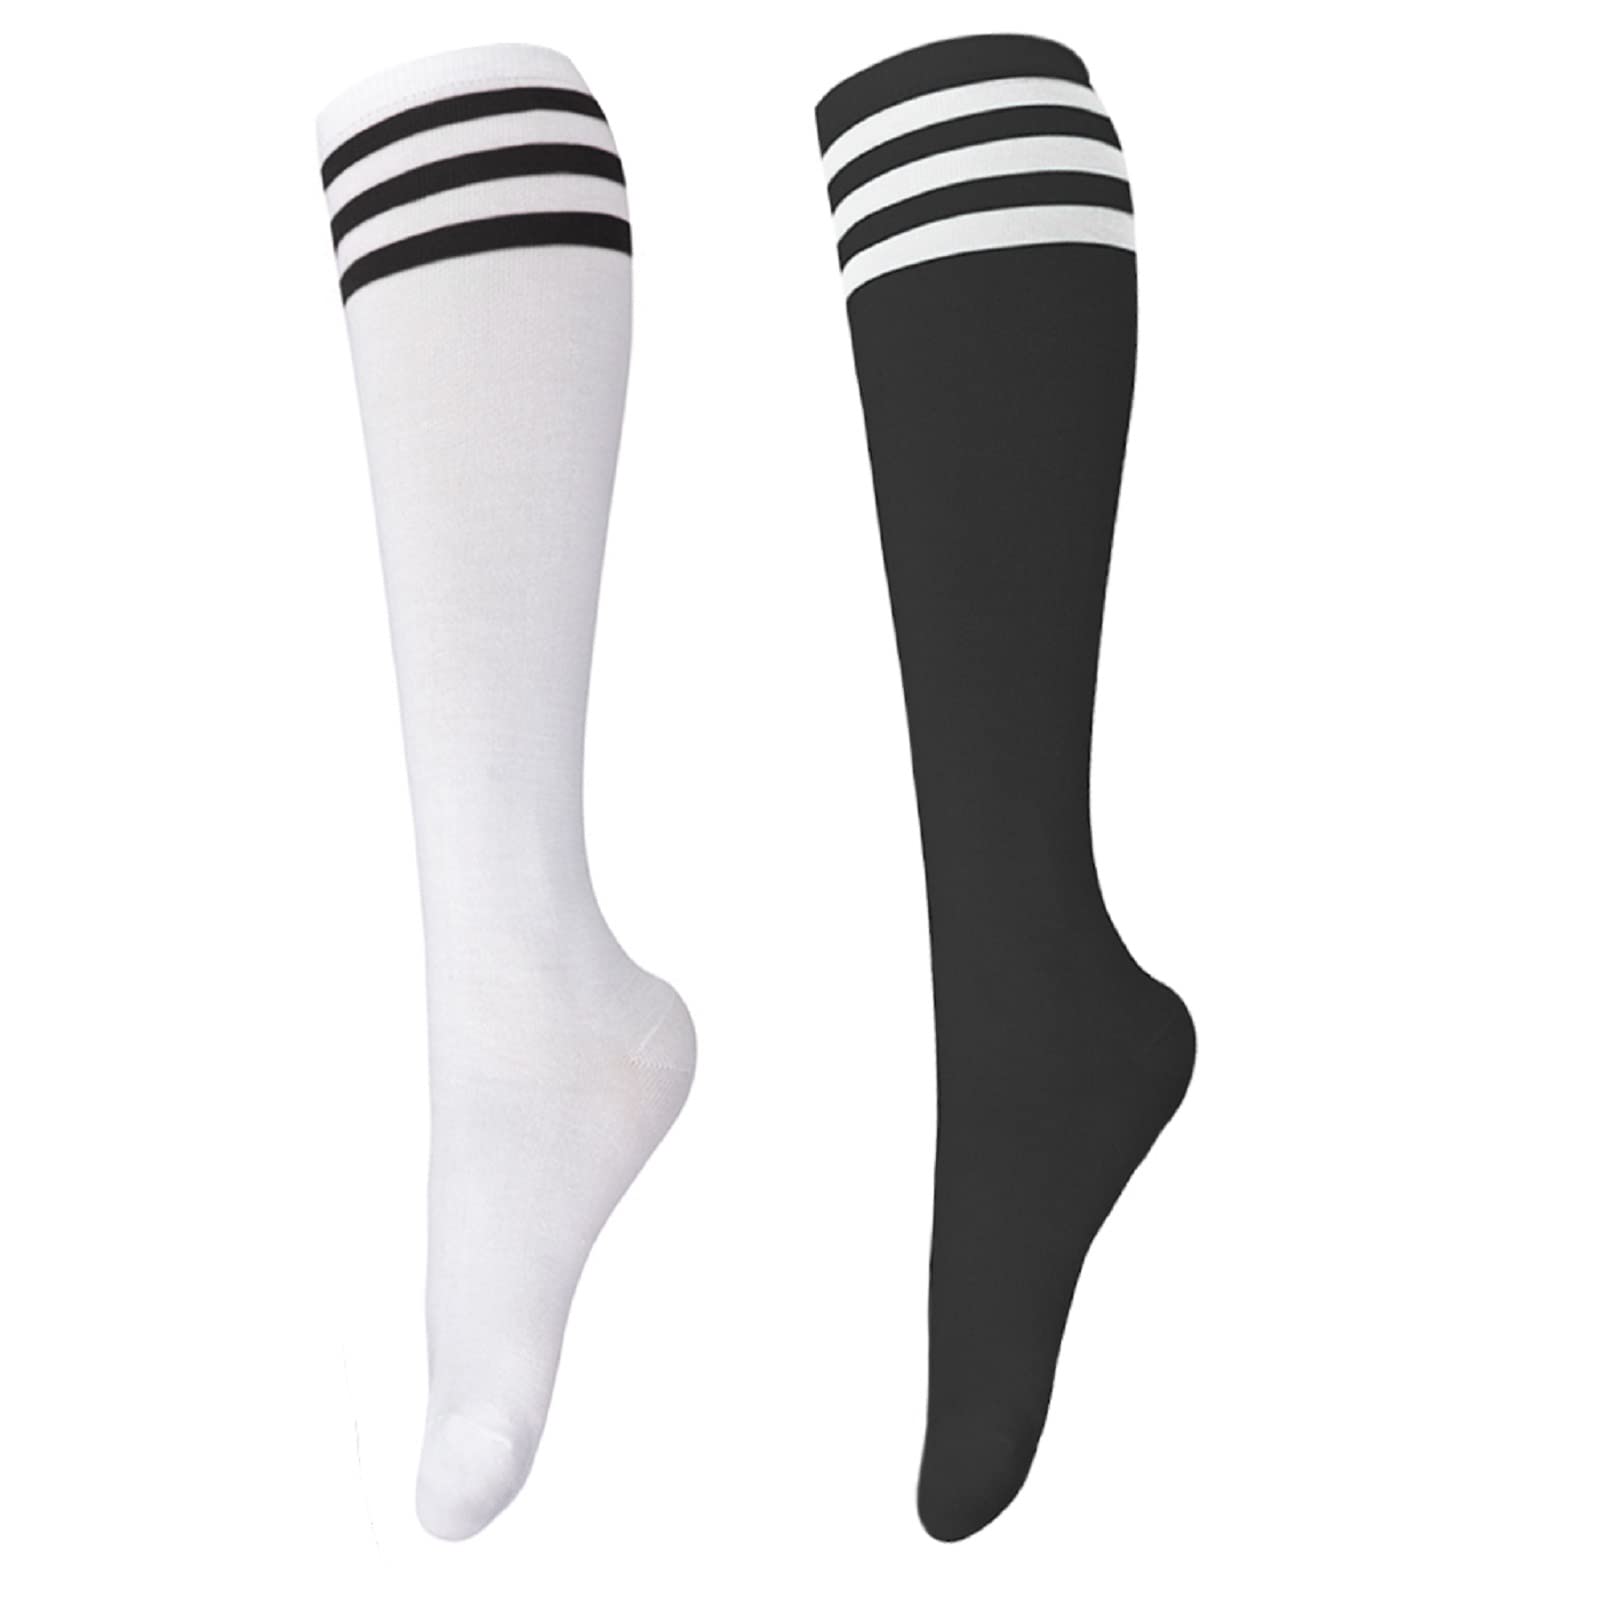 classic tube black and white socks